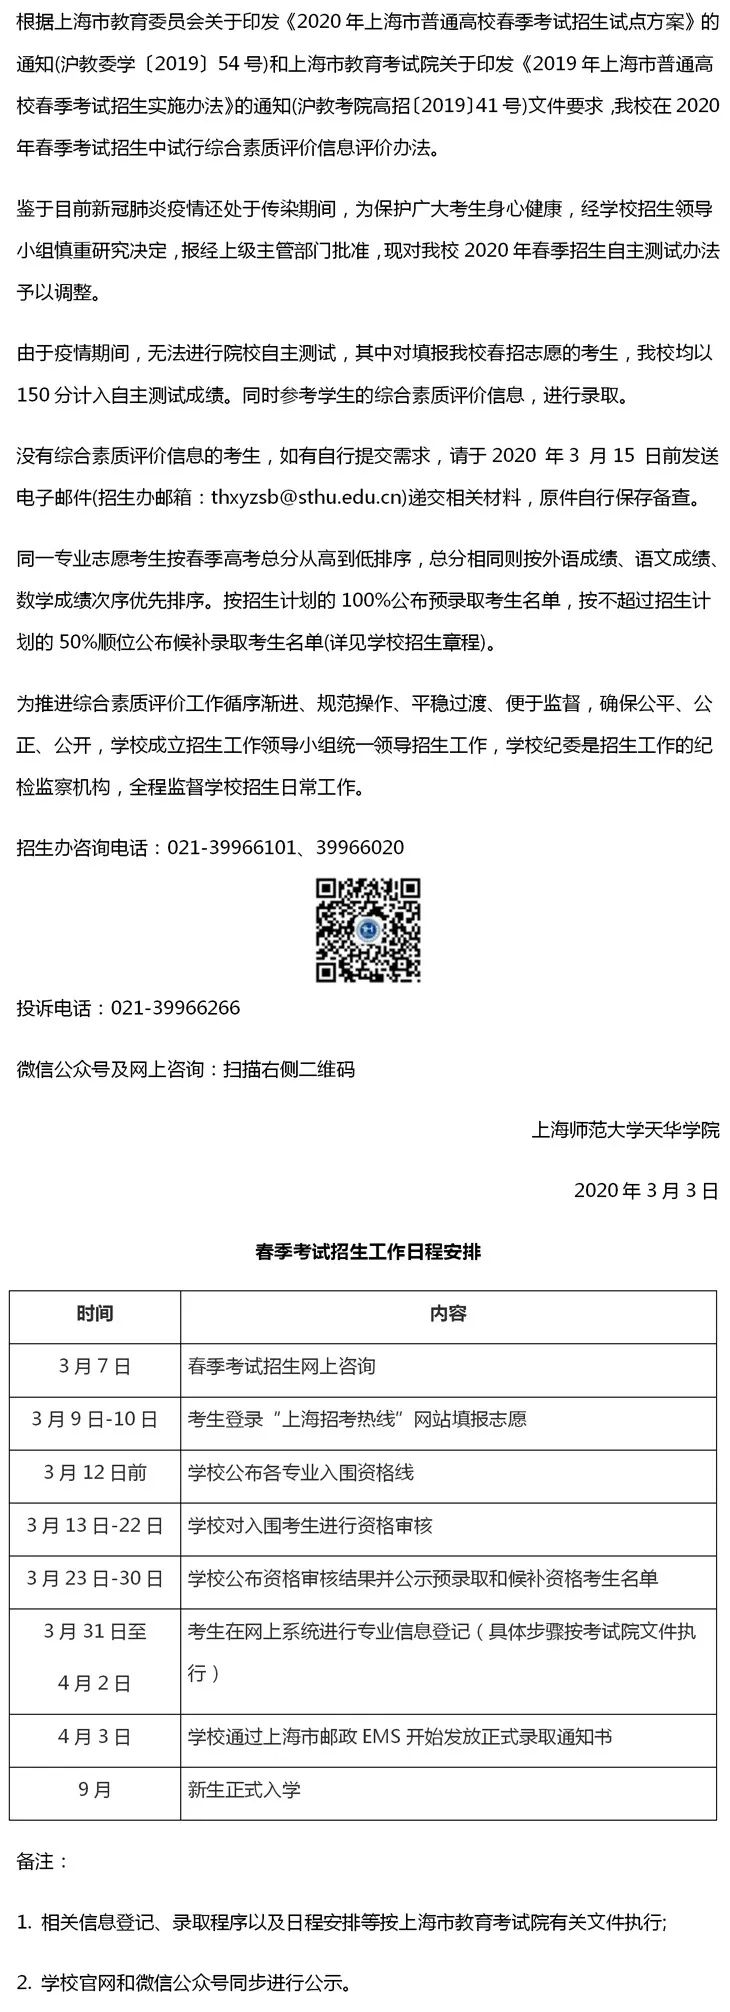 上海师范大学天华学院2020年春考综合素质评价试行办法